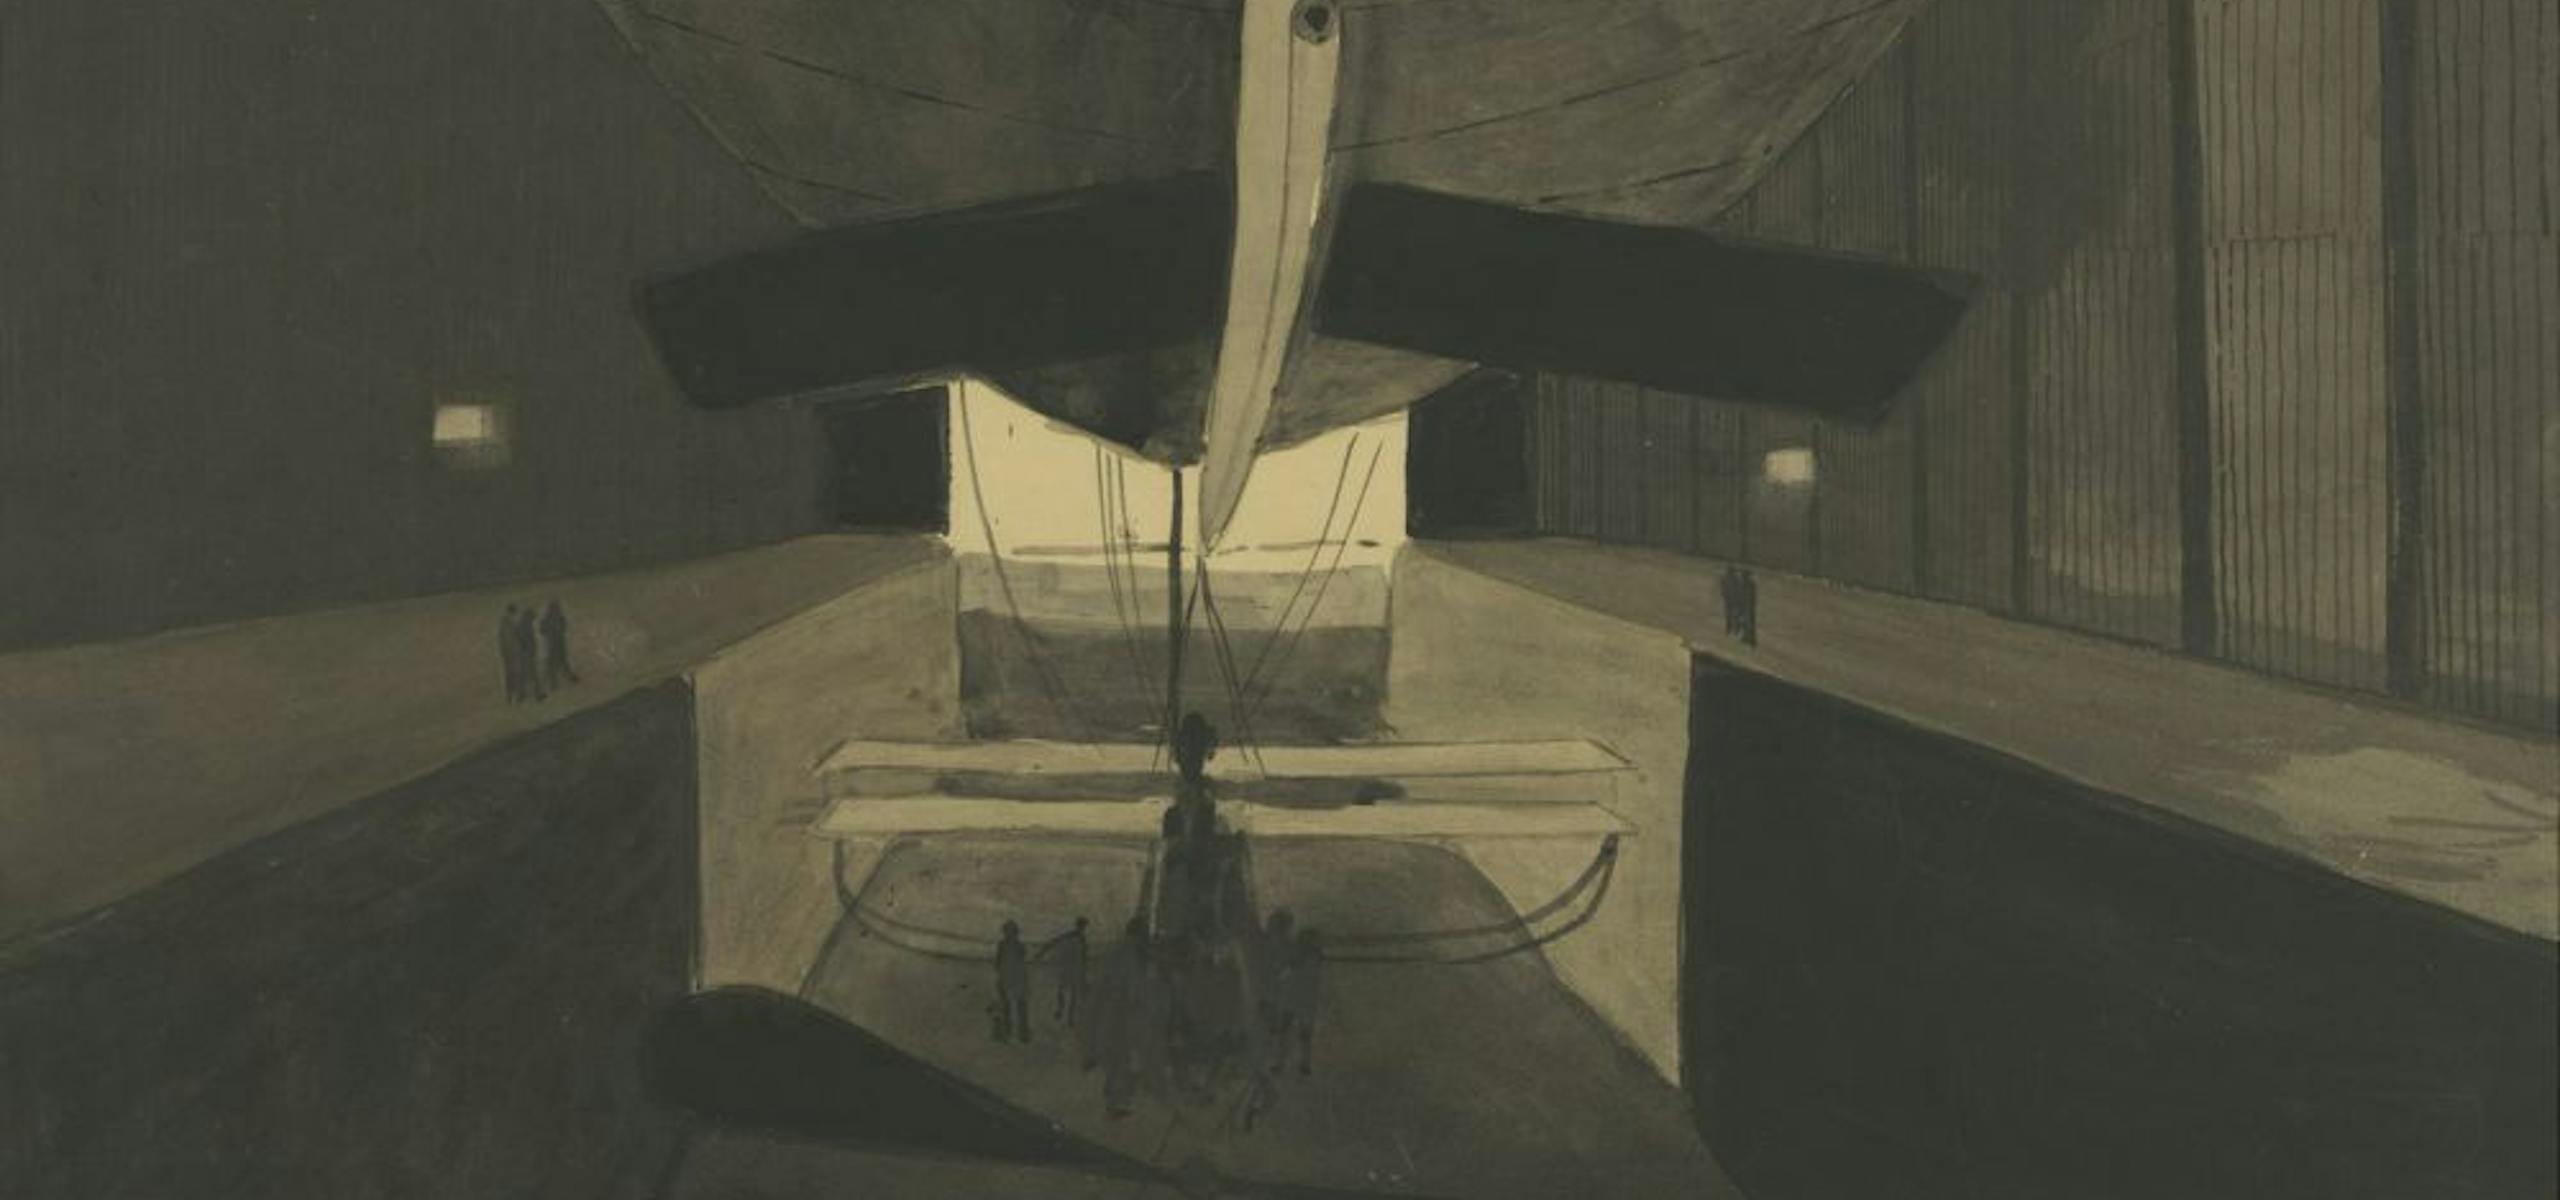 Léon Spilliaert, Het luchtschip 'Belgique II' in zijn loods